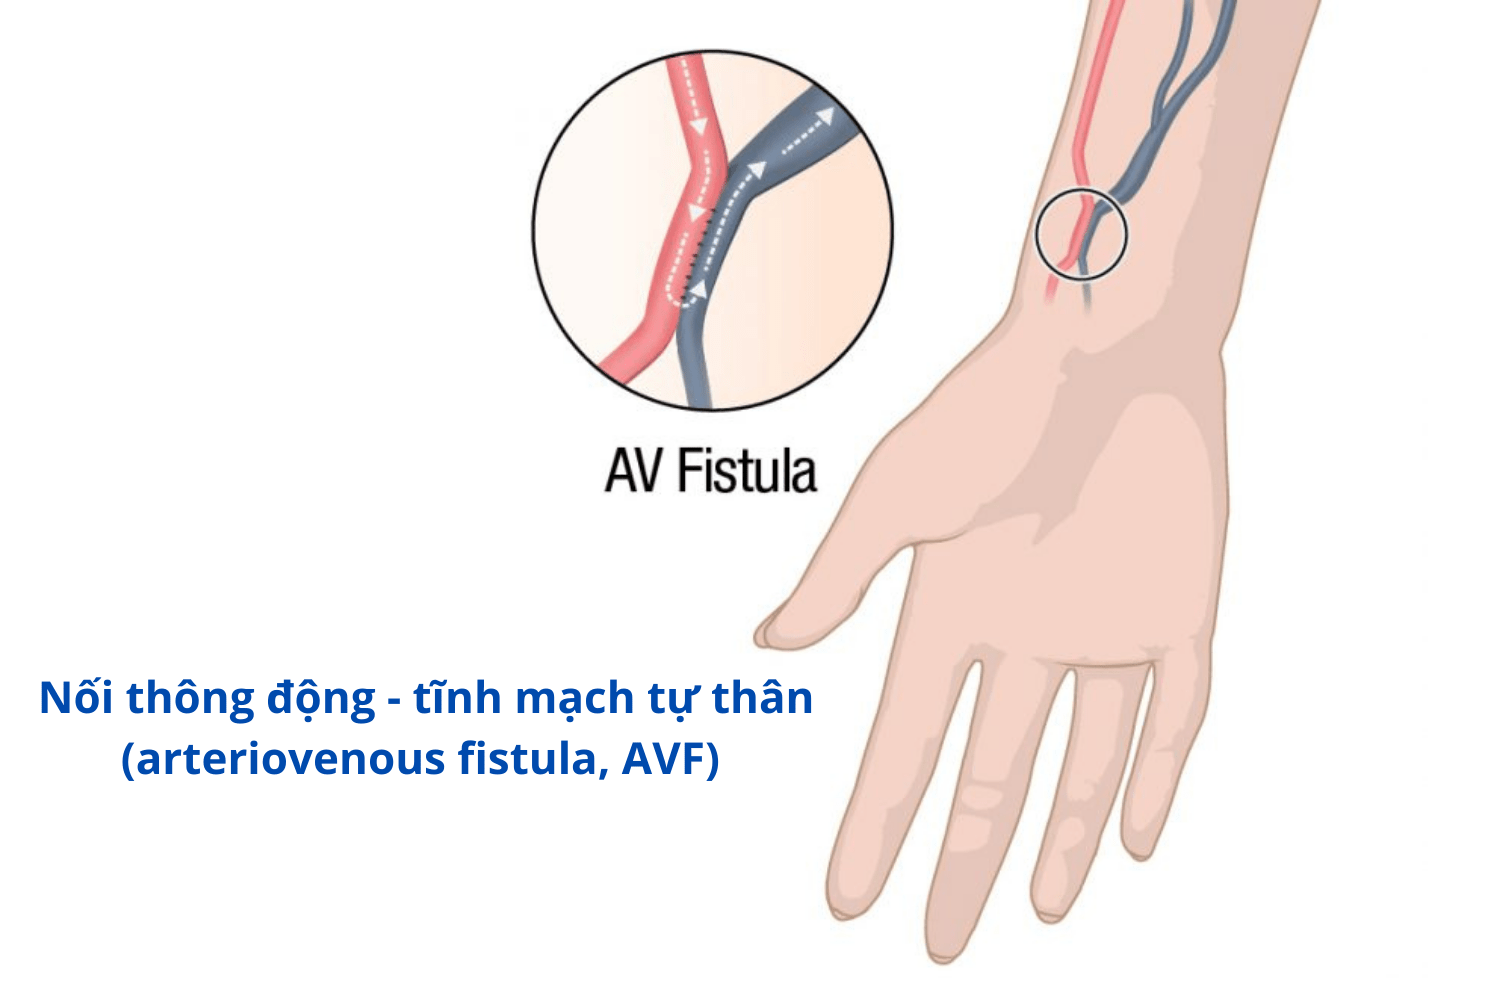 Mổ cầu tay chạy thận – Phẫu thuật AVF